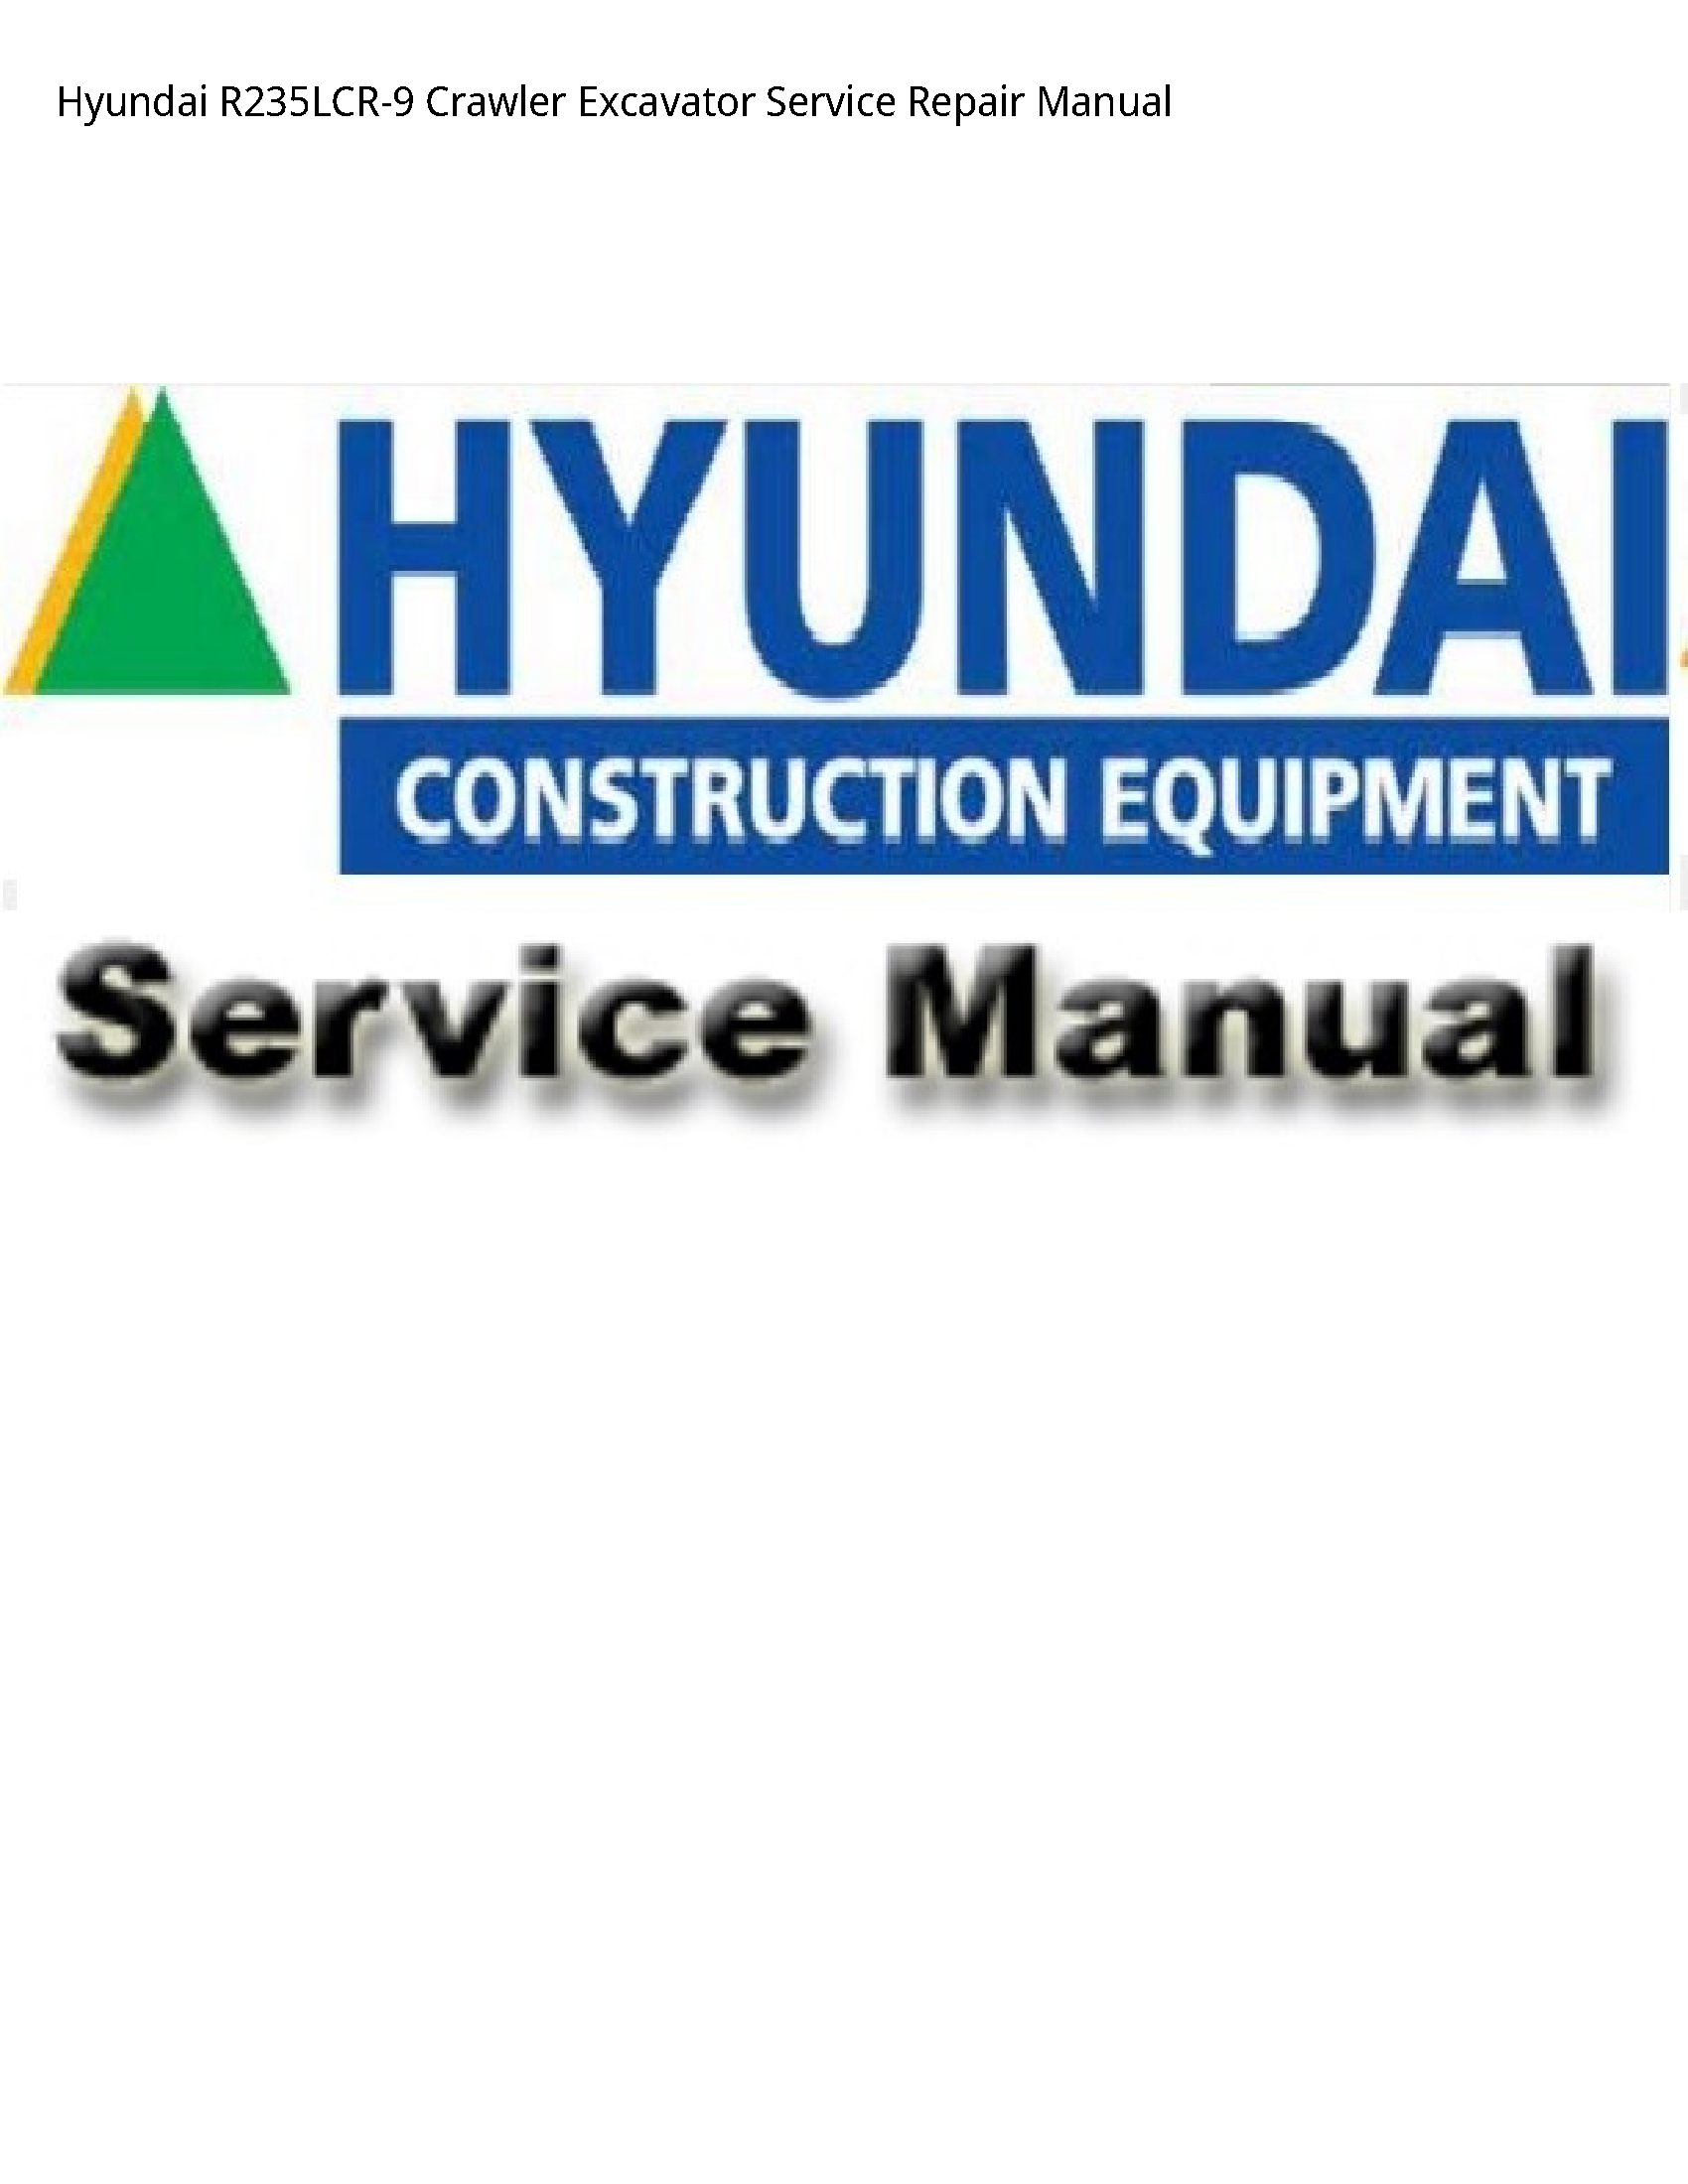 Hyundai R235LCR-9 Crawler Excavator manual